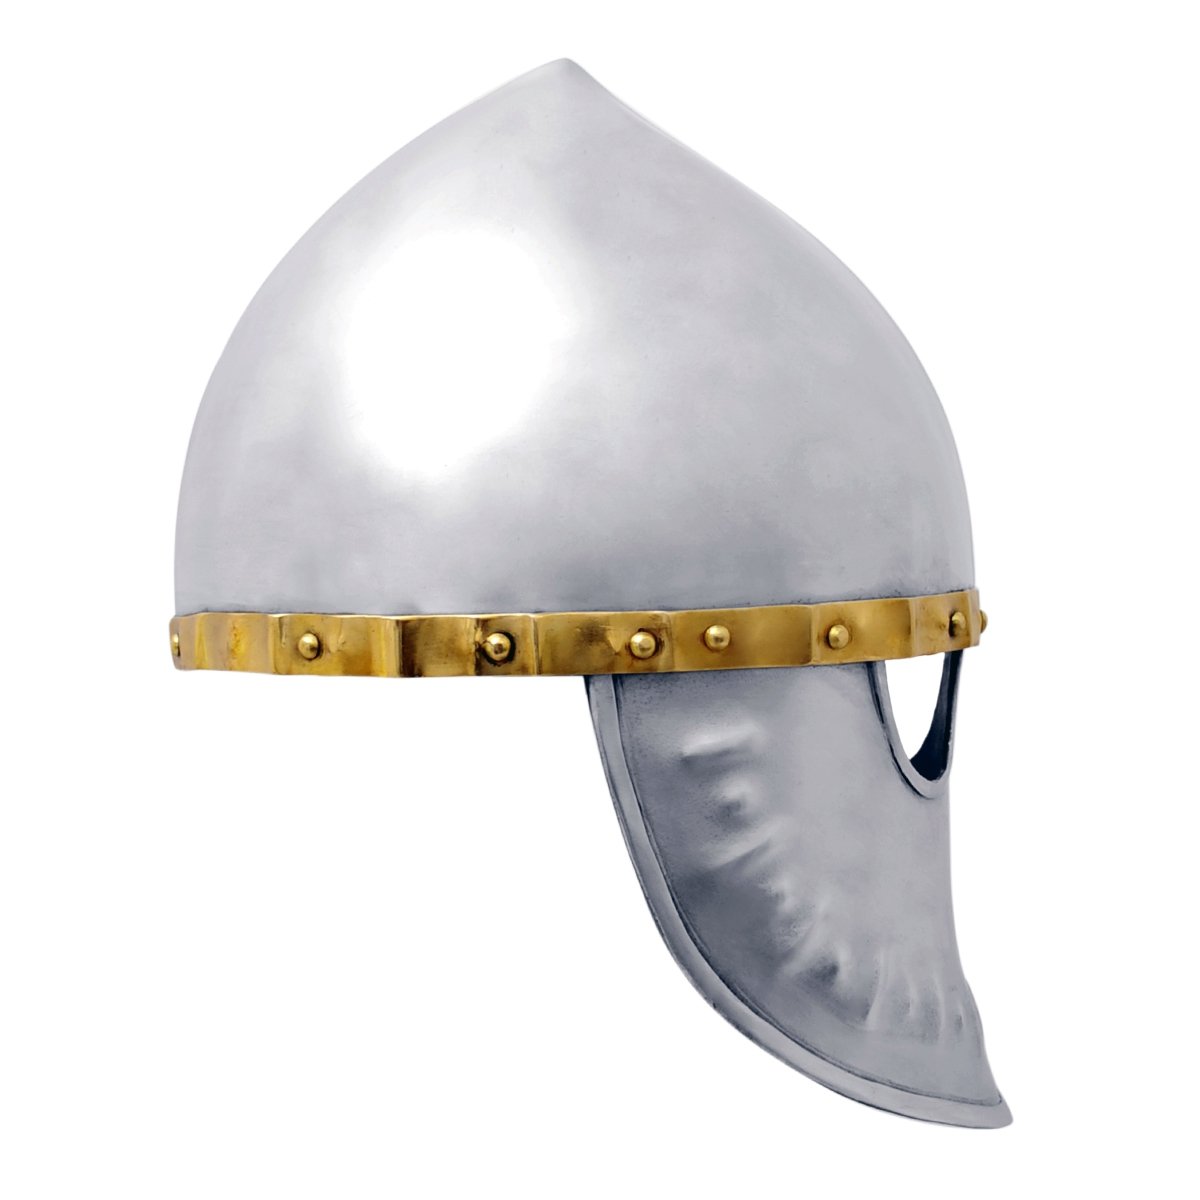 Italo-Normannischer Helm - um 1170, Größe XL